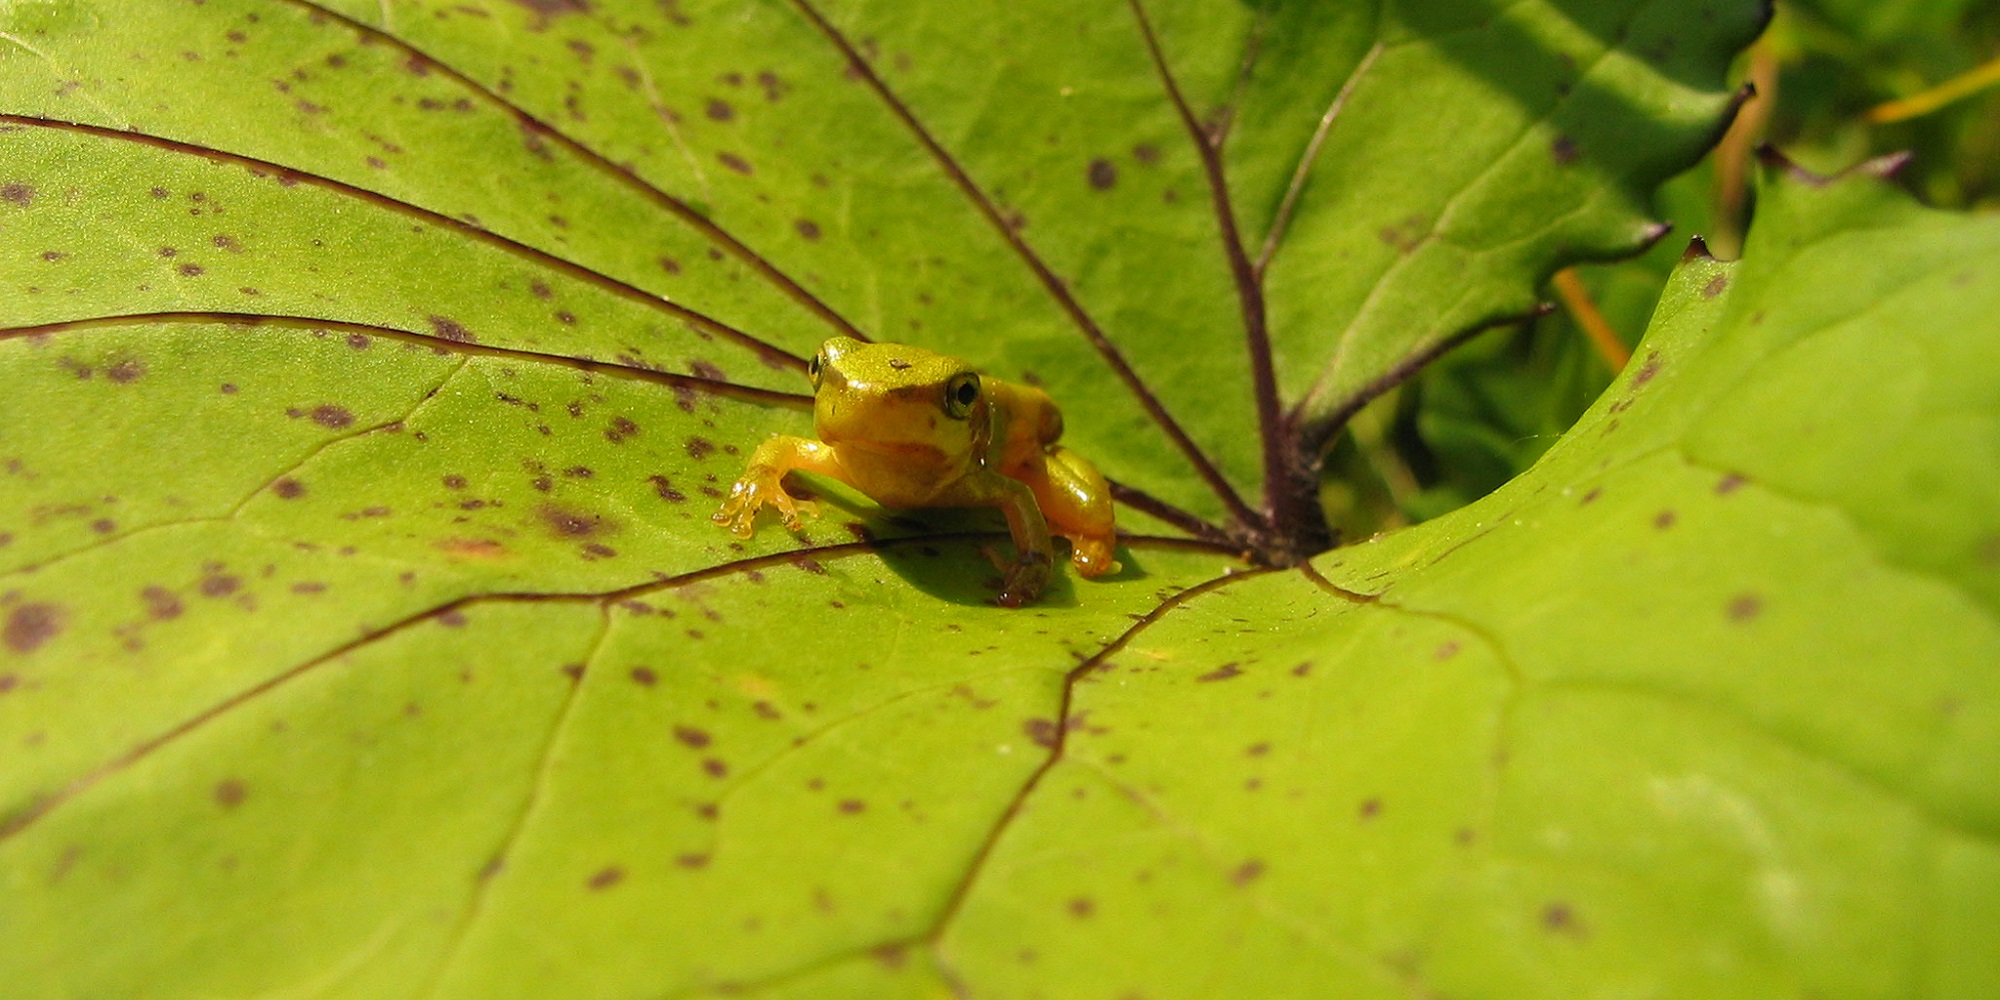 Nahaufnahme von einem grünen Frosch auf einem Blatt